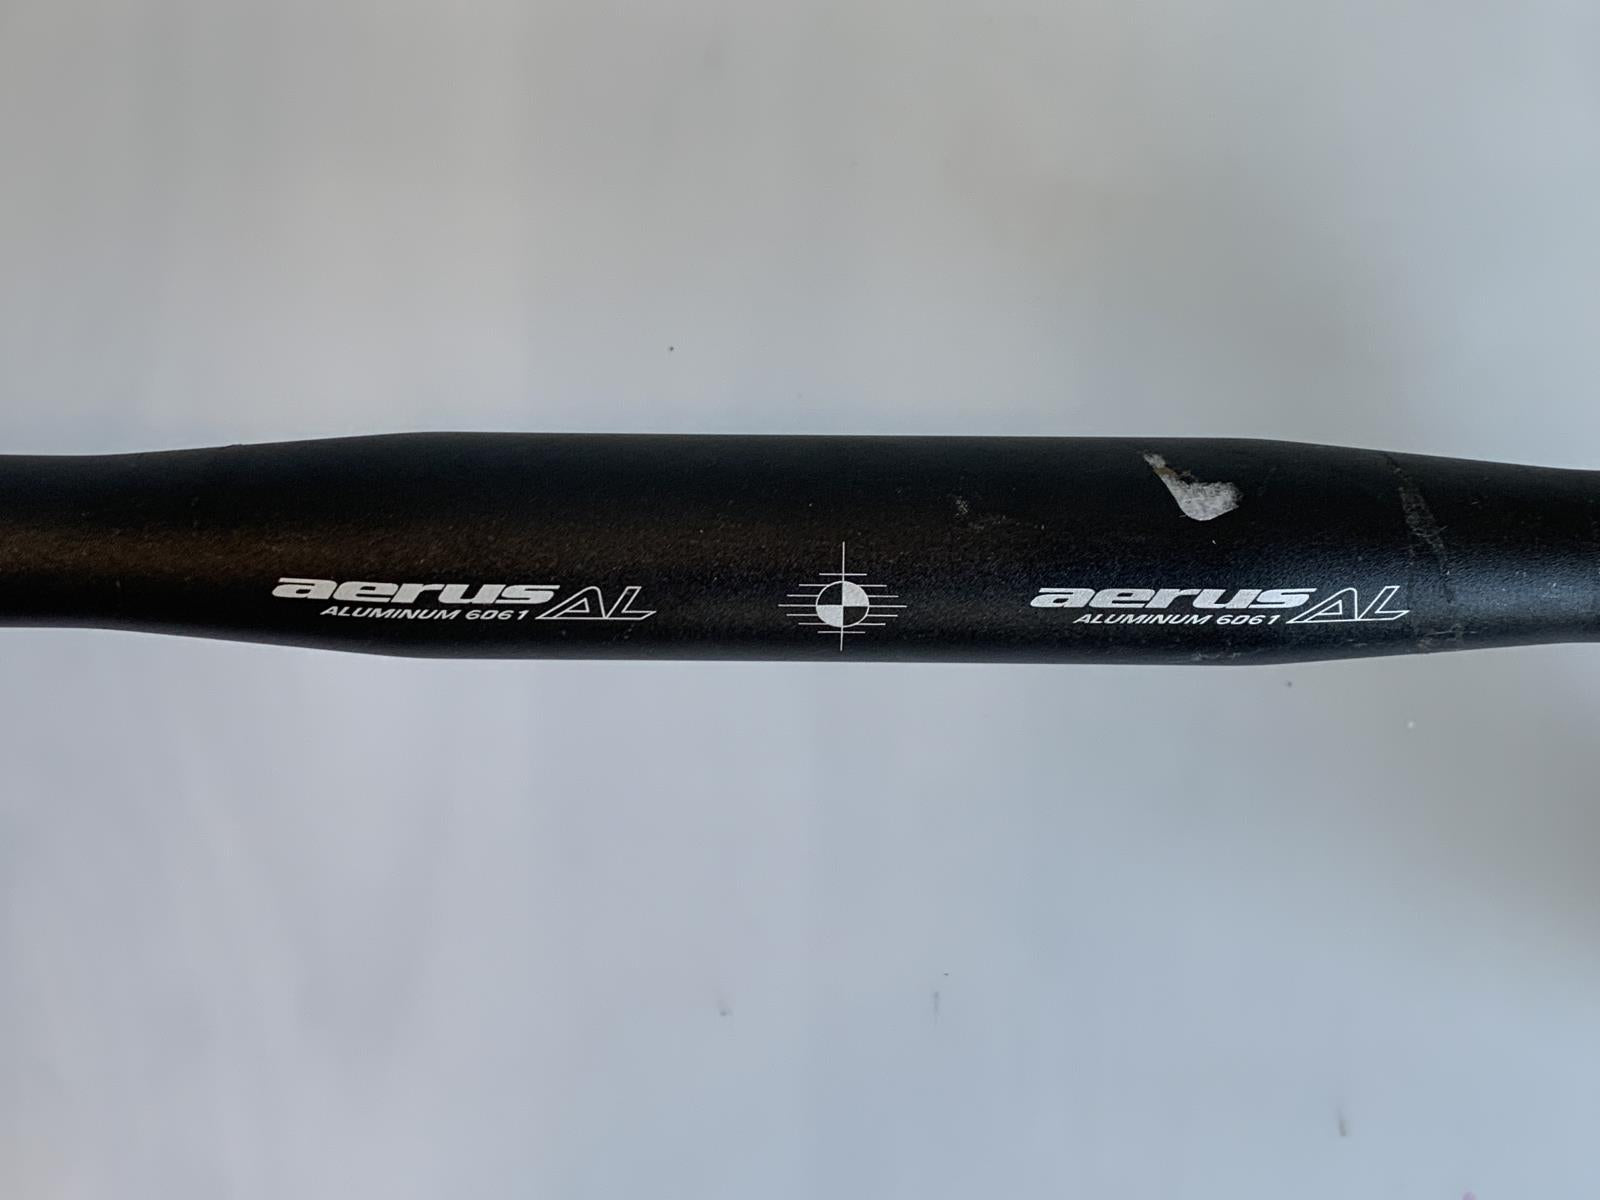 Aerus Alloy Drop Curled Road Bike Handlebar 31.8mm x 420mm Black New Take Off - Random Bike Parts